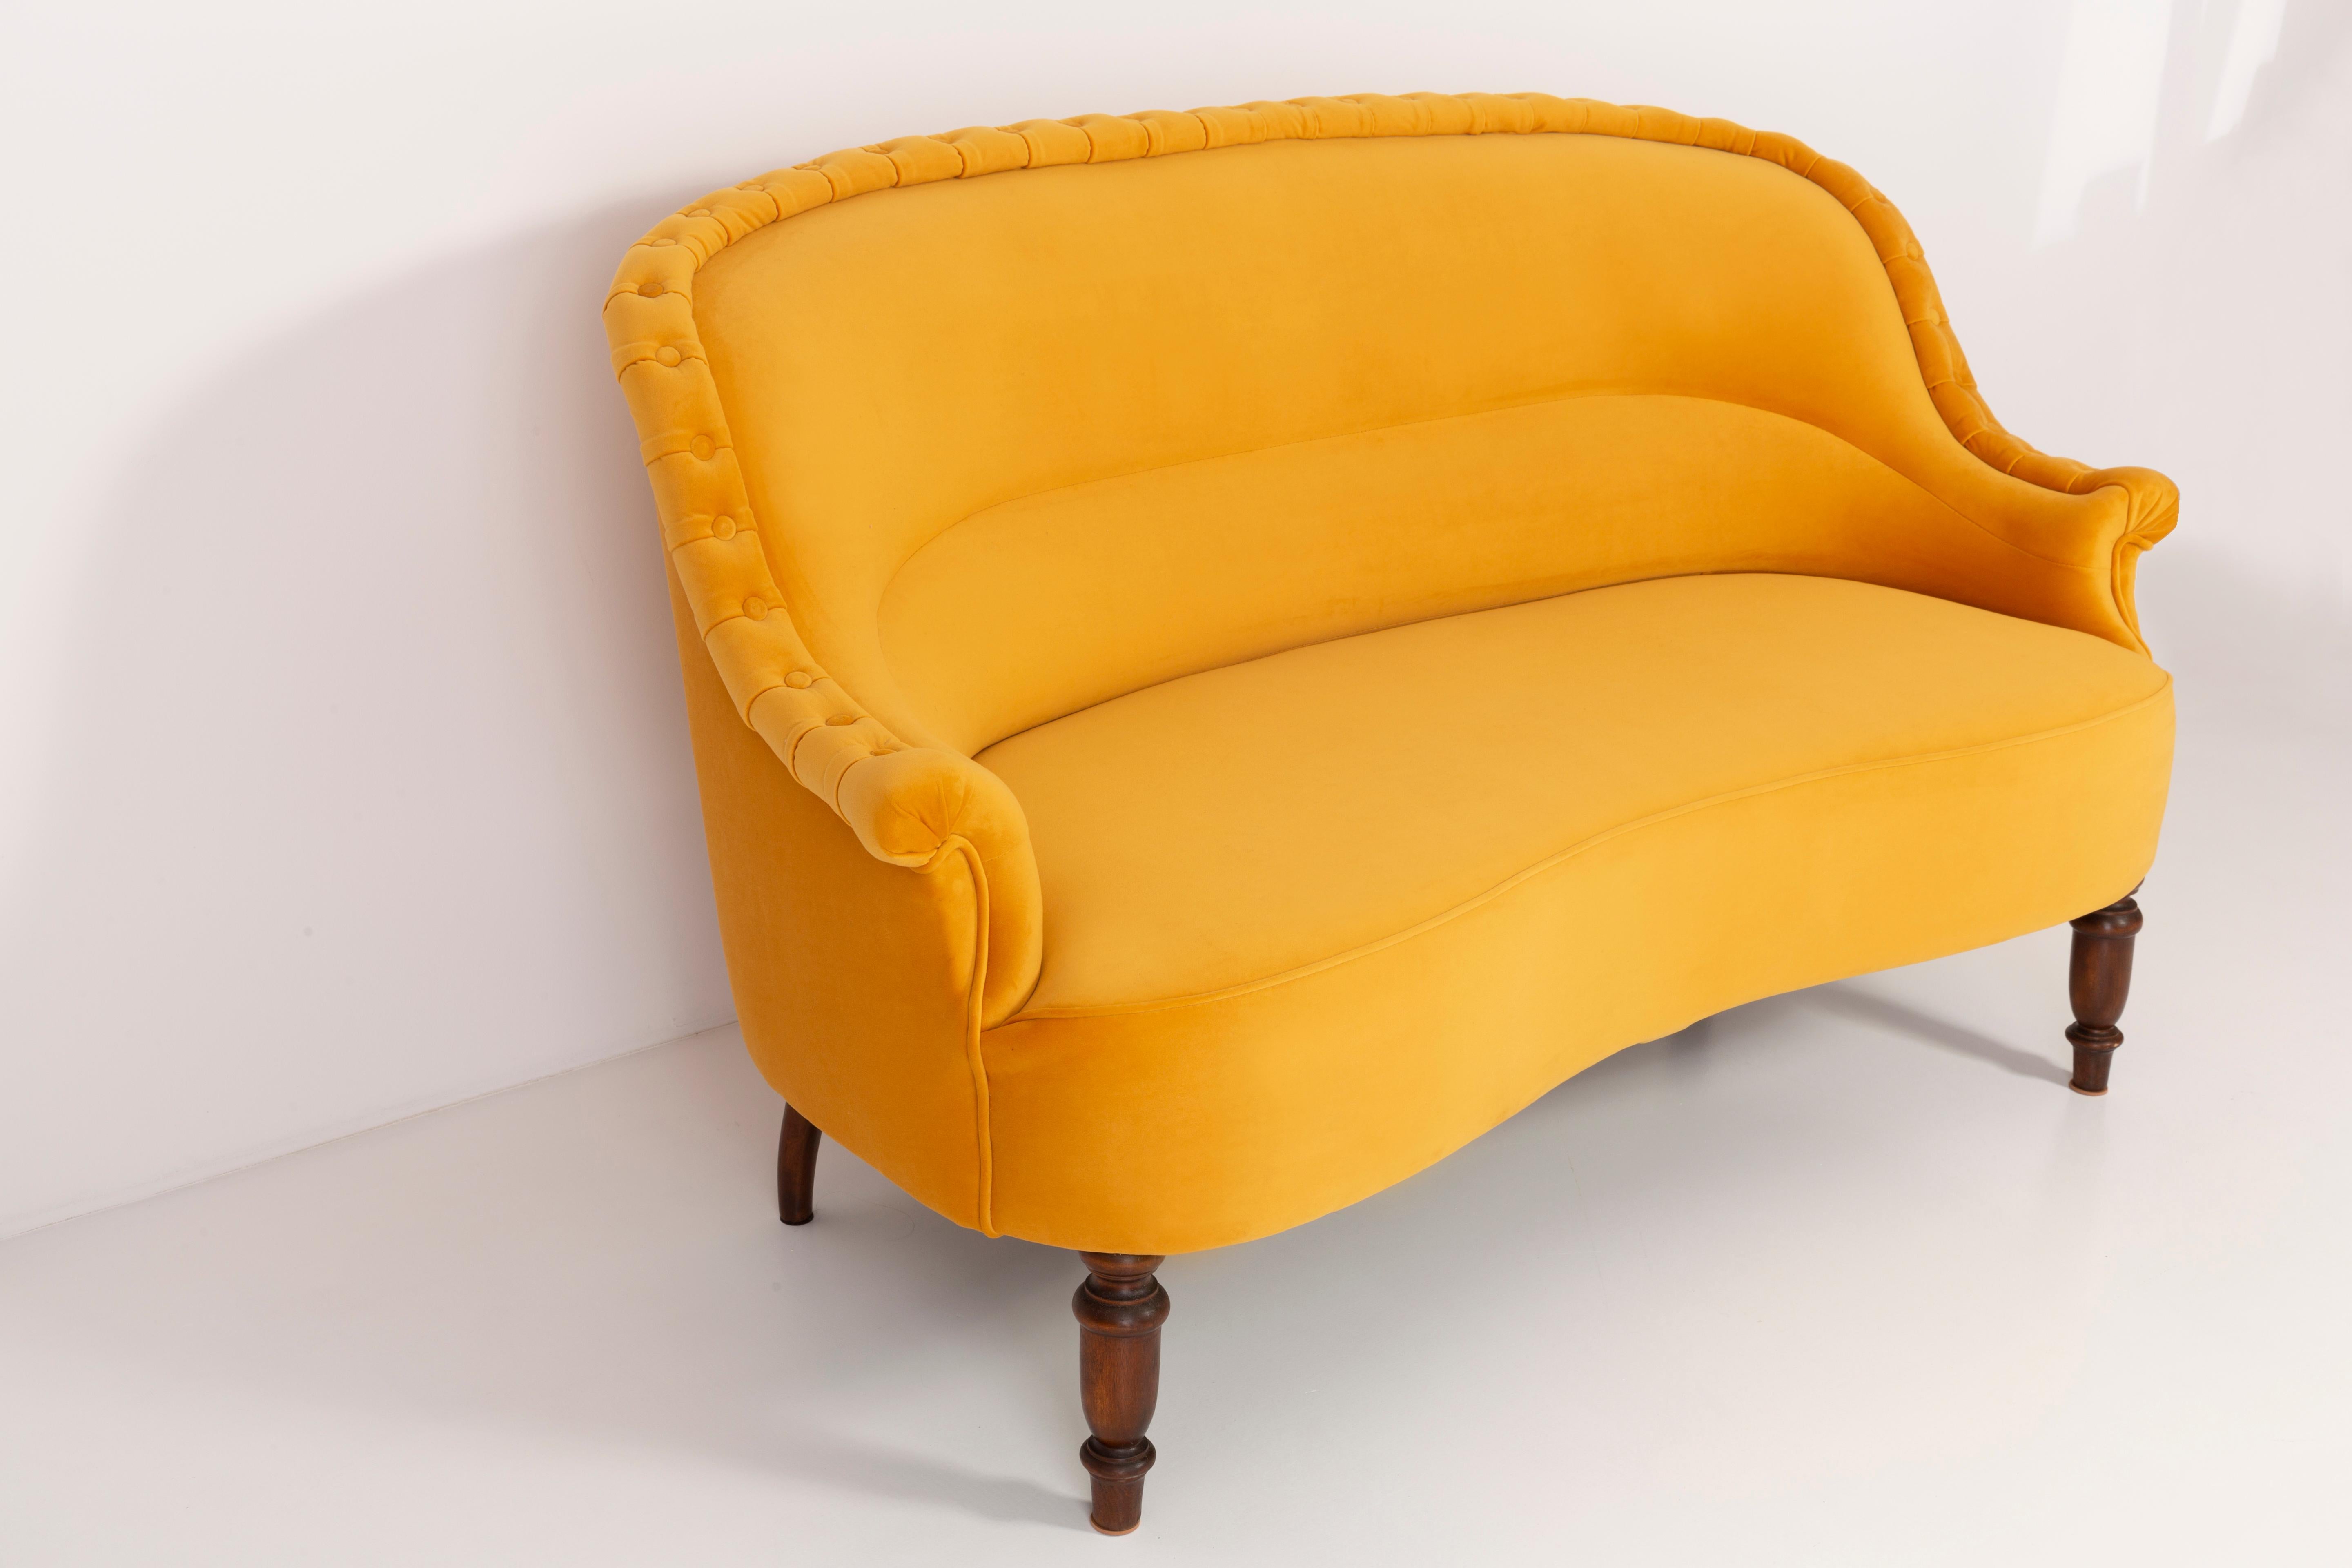 1930s sofa styles